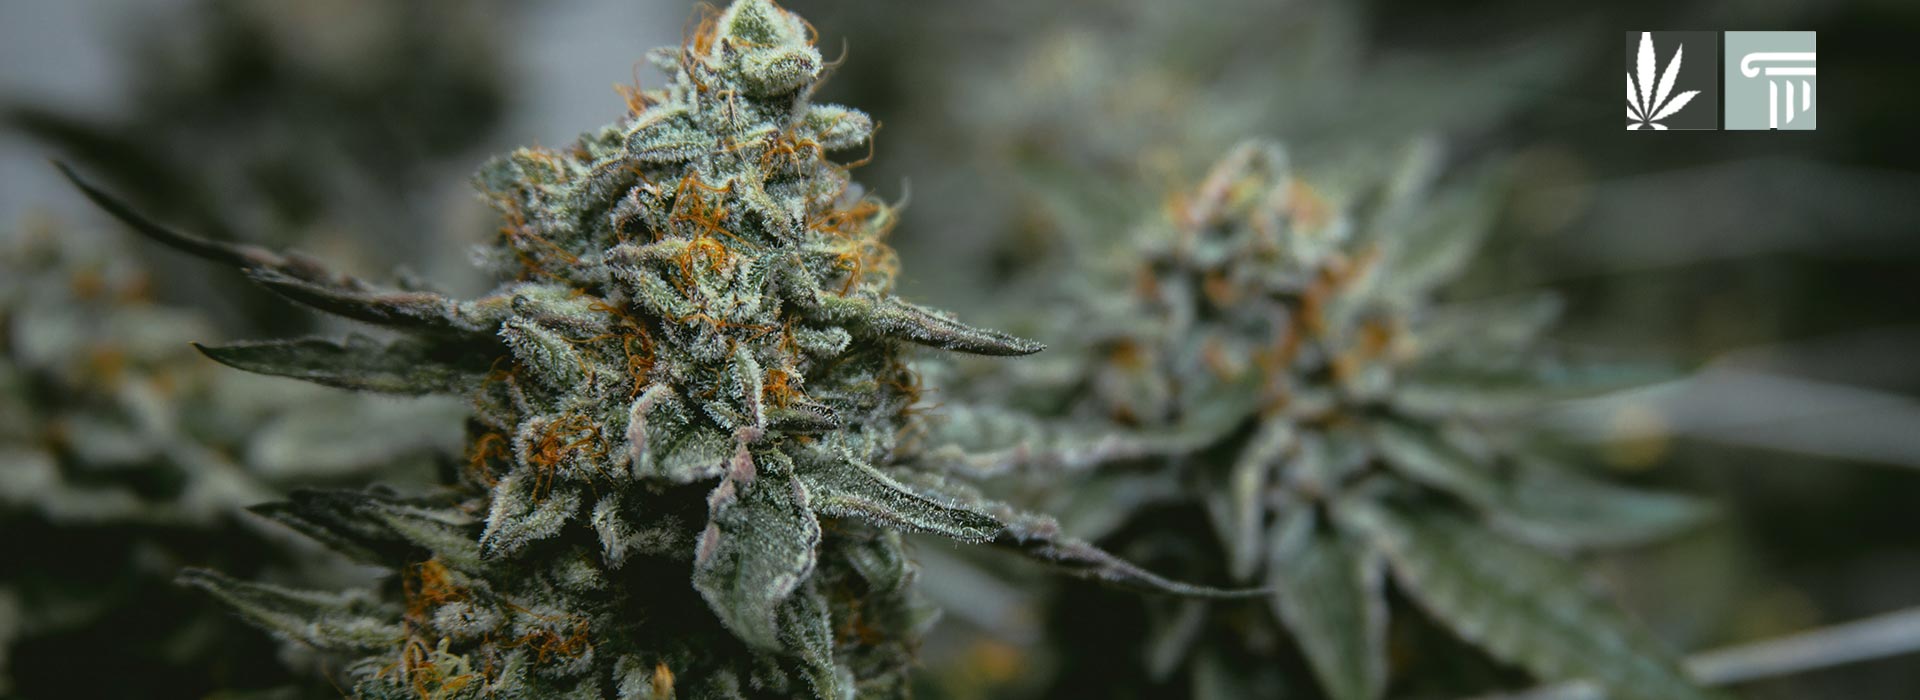 south dakota medical marijuana home grow